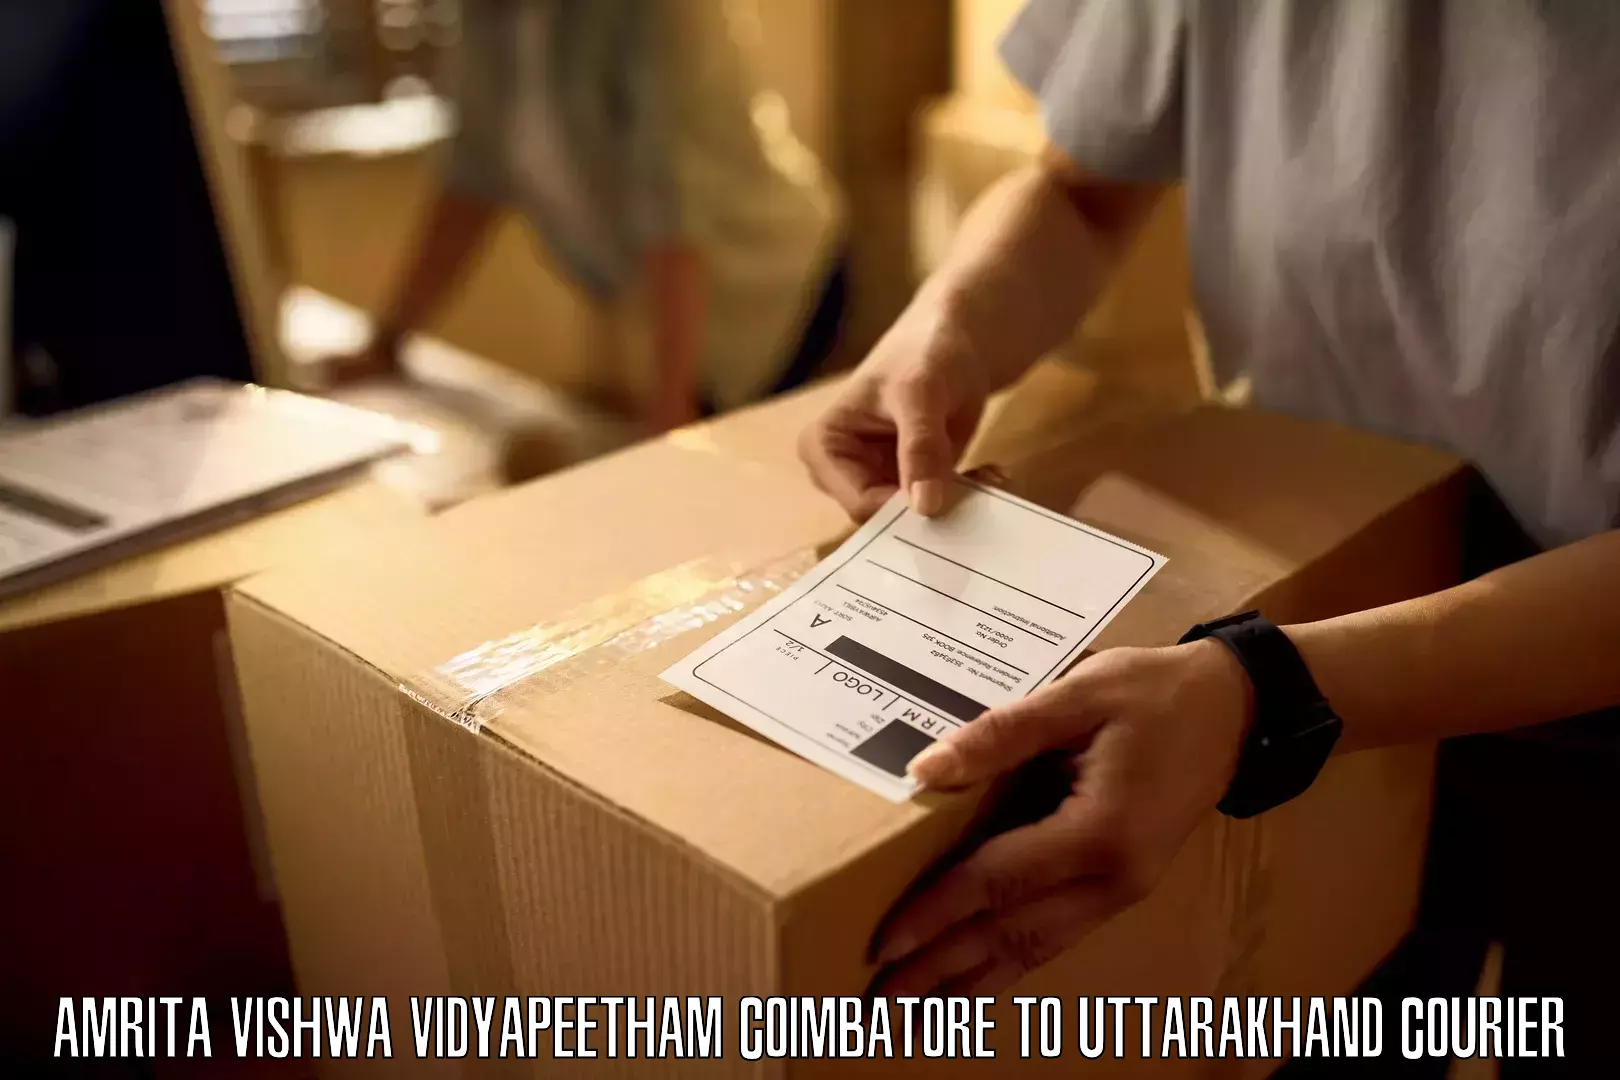 Customer-oriented courier services Amrita Vishwa Vidyapeetham Coimbatore to Rishikesh